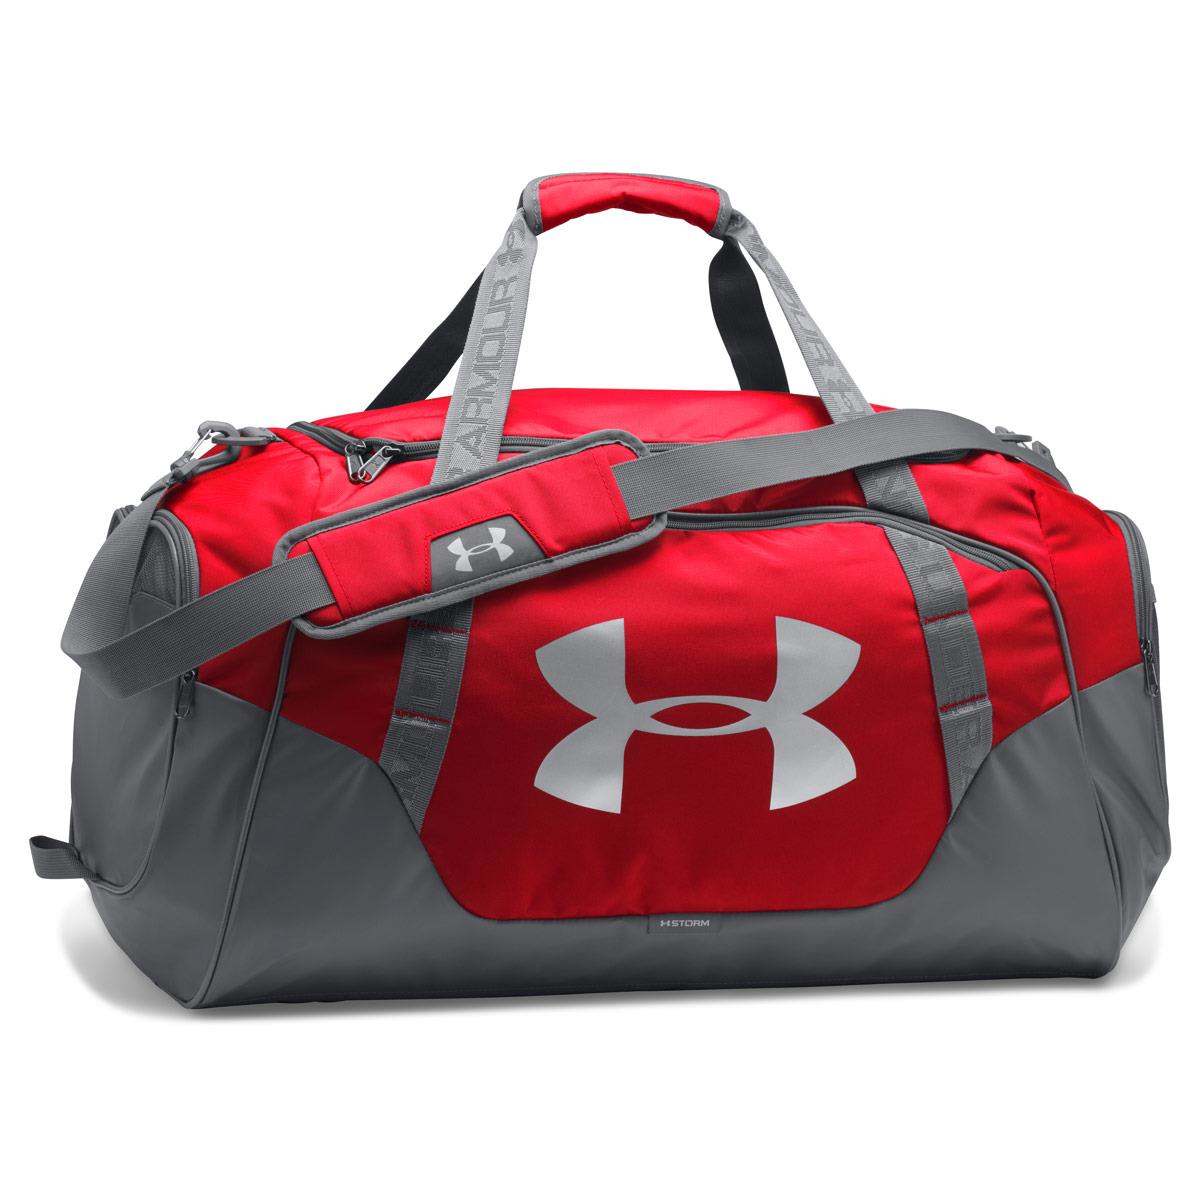 Спортивная сумка Under Armour Undeniable 3.0 Medium Duffle Bag Red